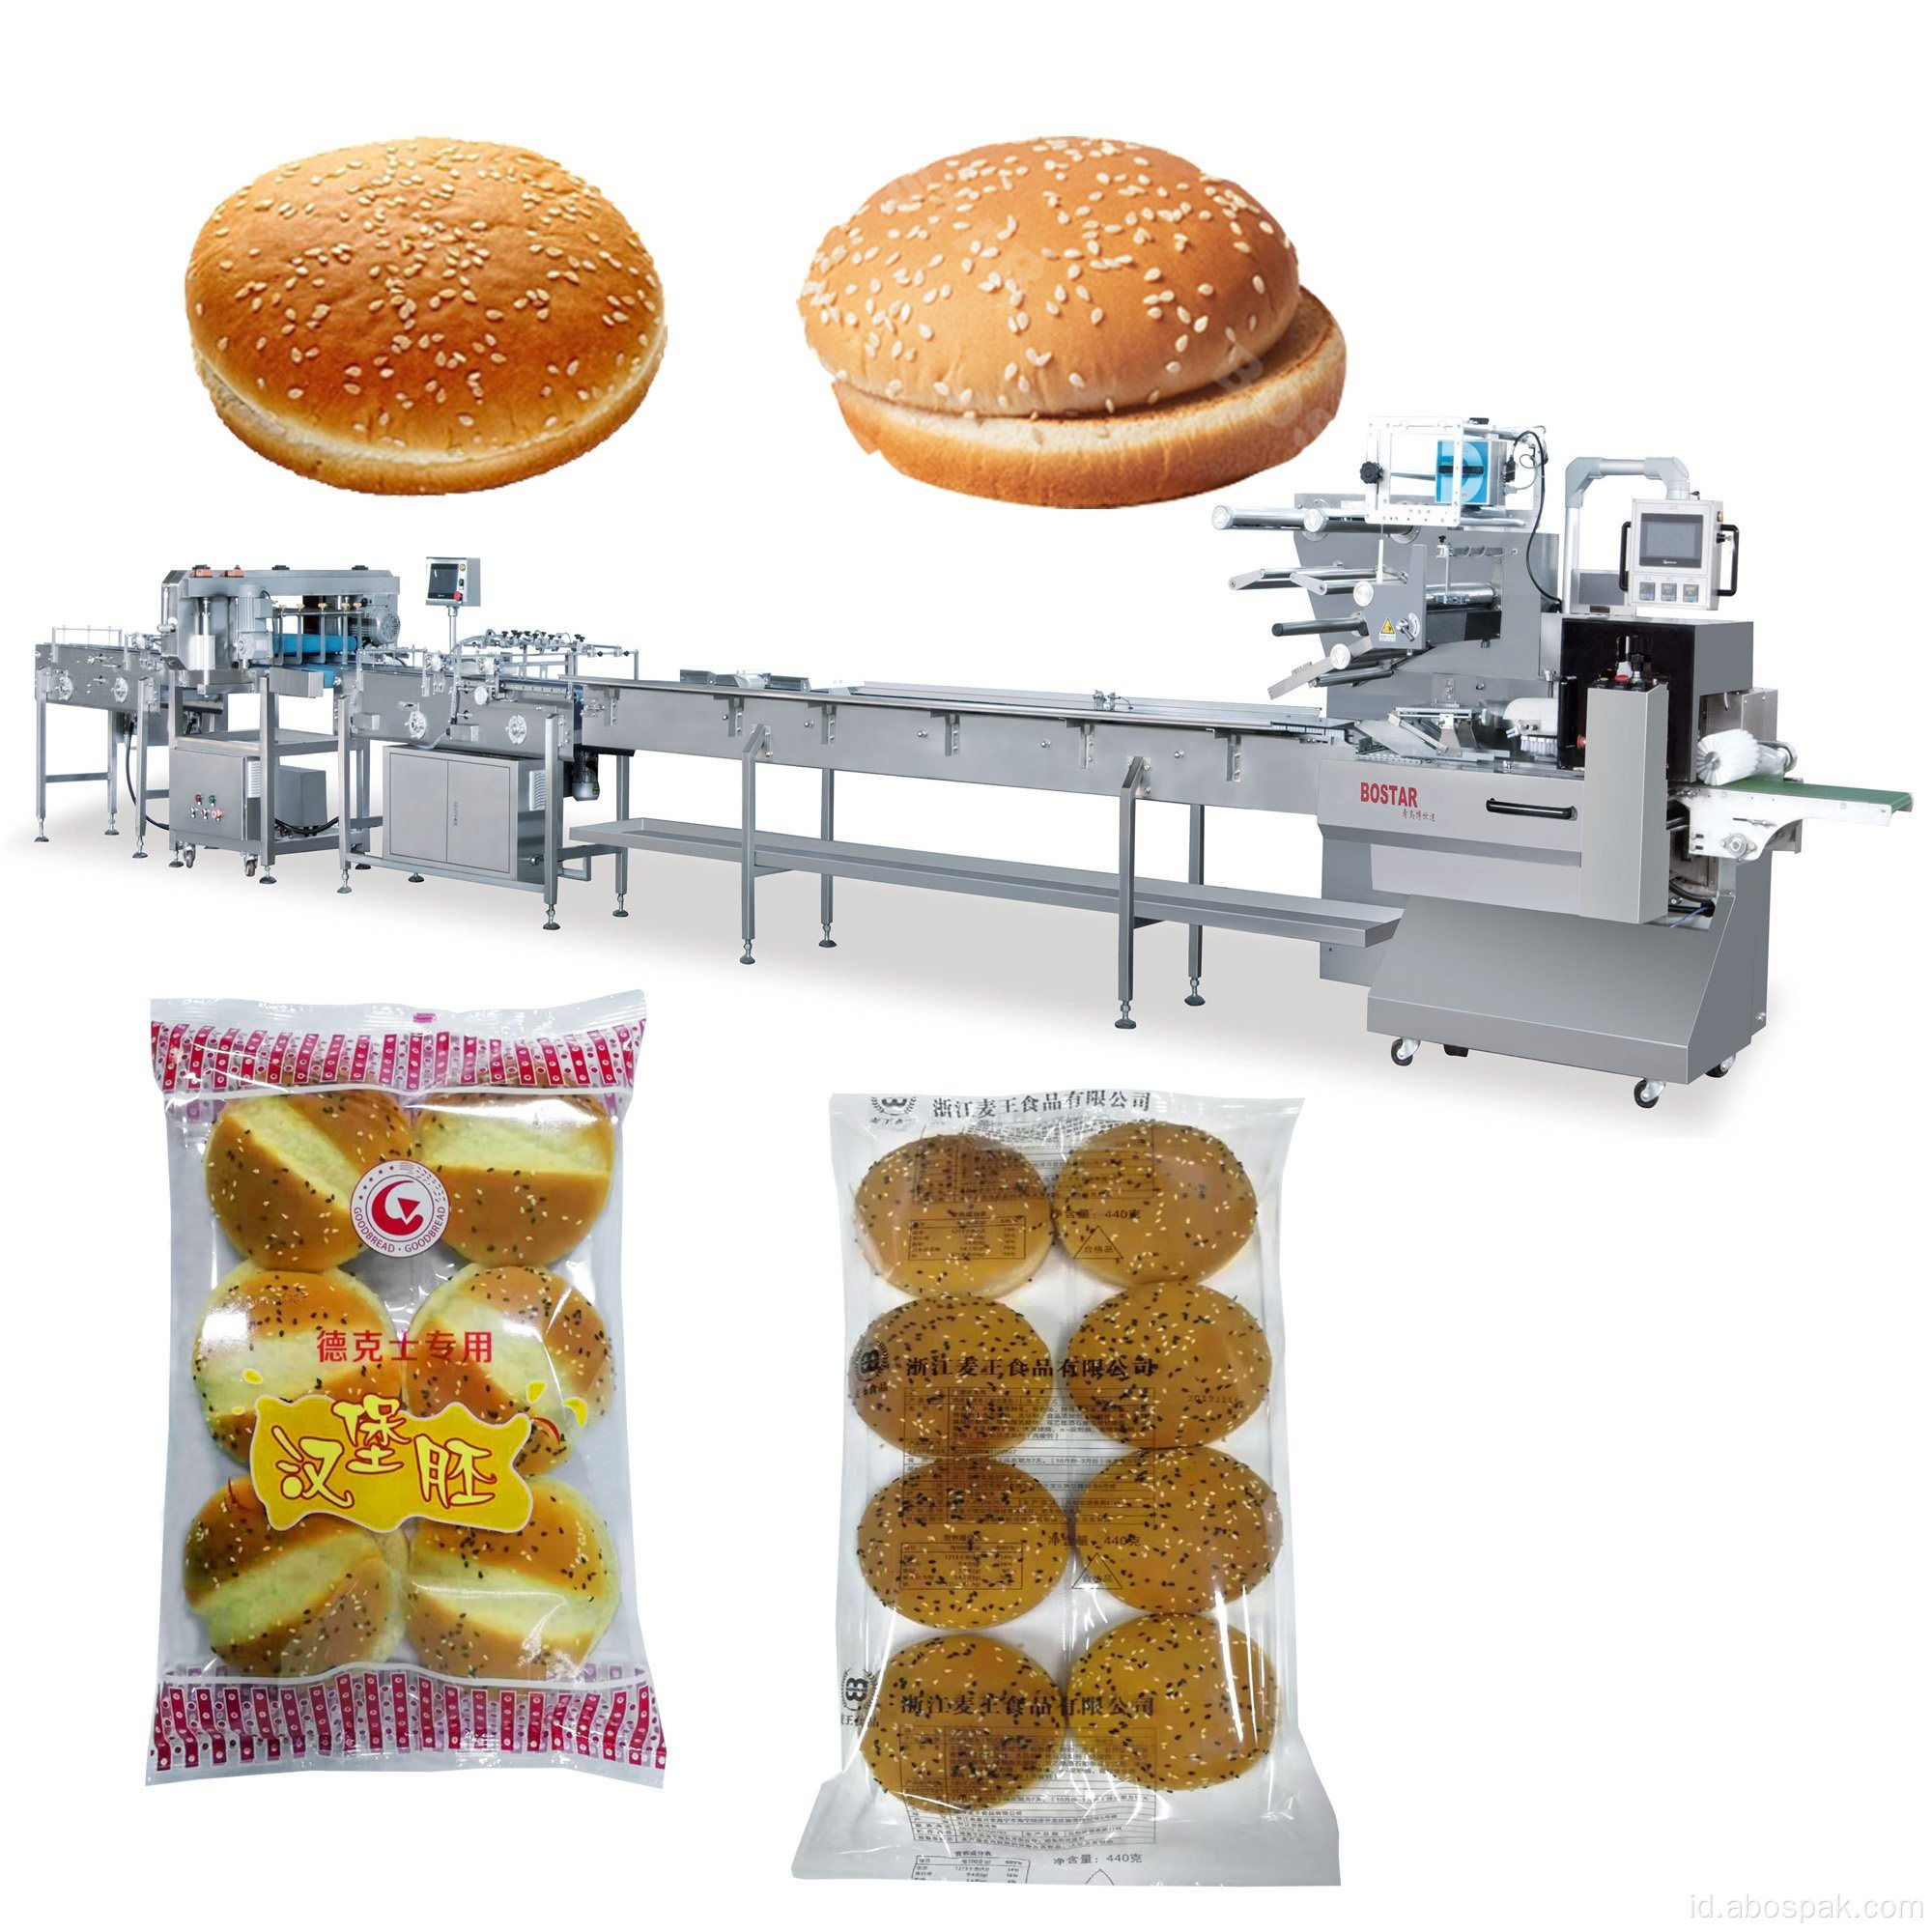 Jalur Pengemasan Makanan untuk Hamburger Bun